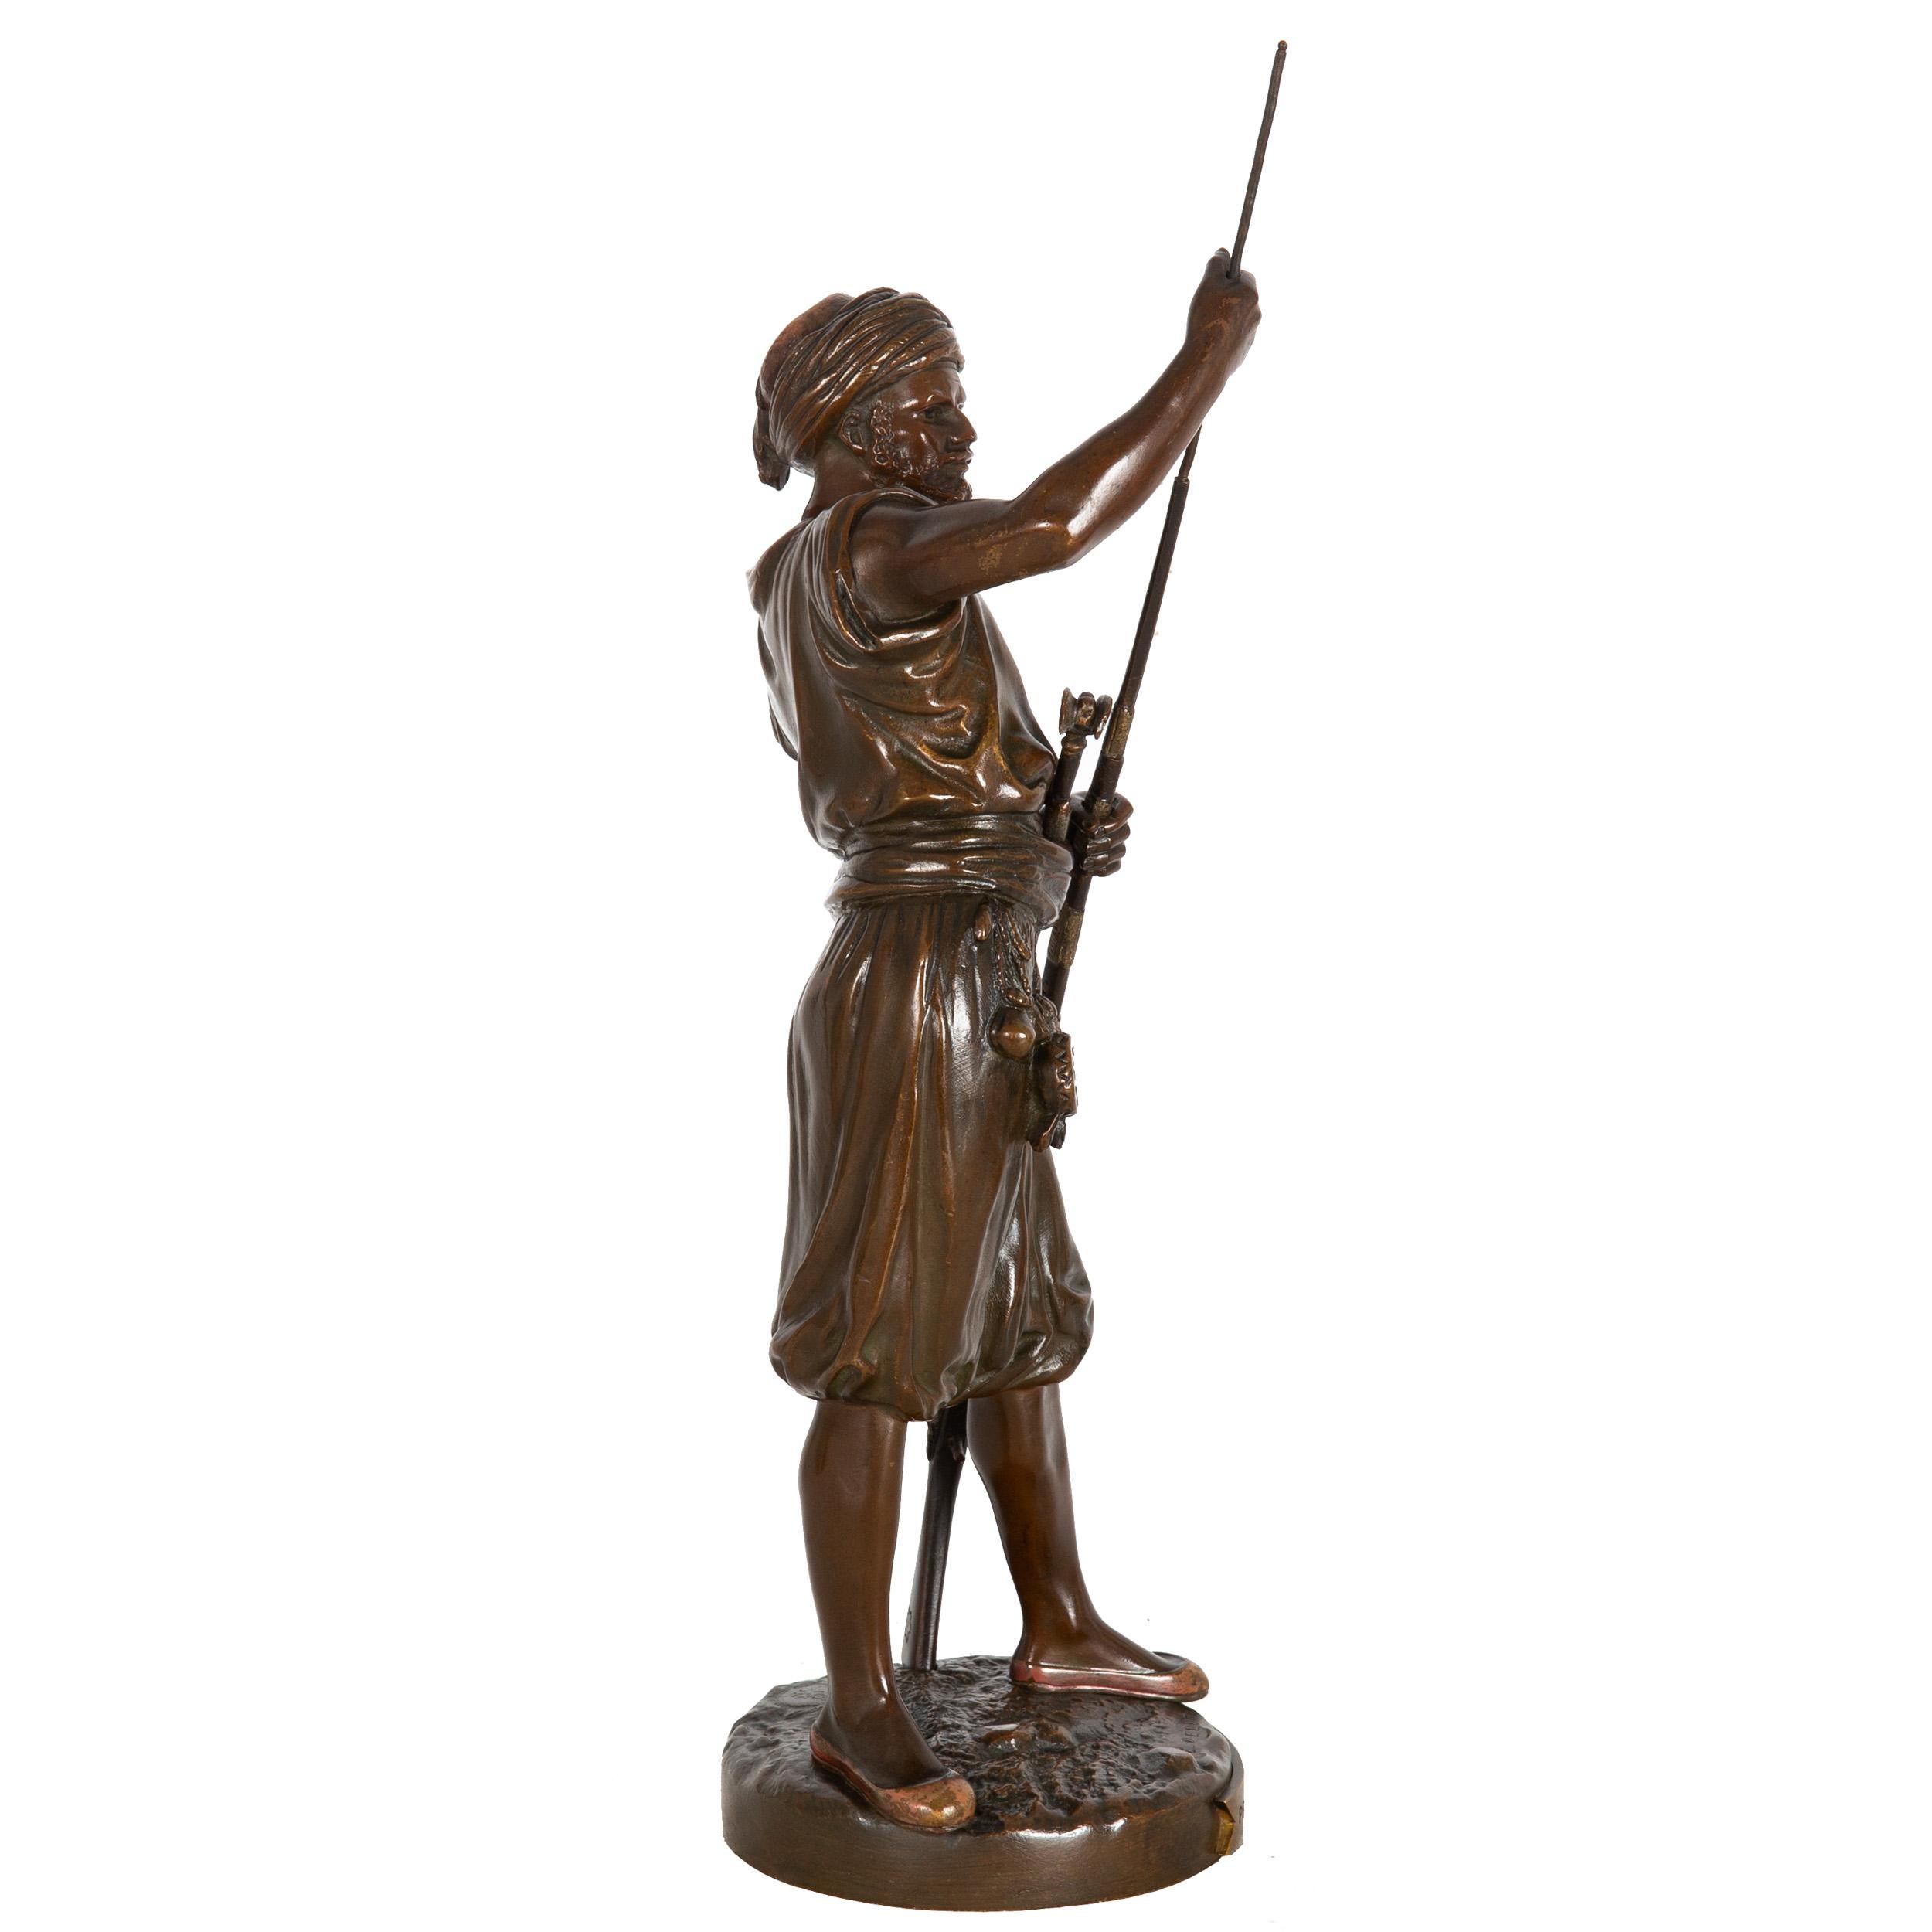 JEAN-DIDIER-DEBÜT
Französisch, 1824-1893

Französisches orientalistisches Modell eines Janitscharenkriegers

Polychromierte und patinierte Bronze  signiert 